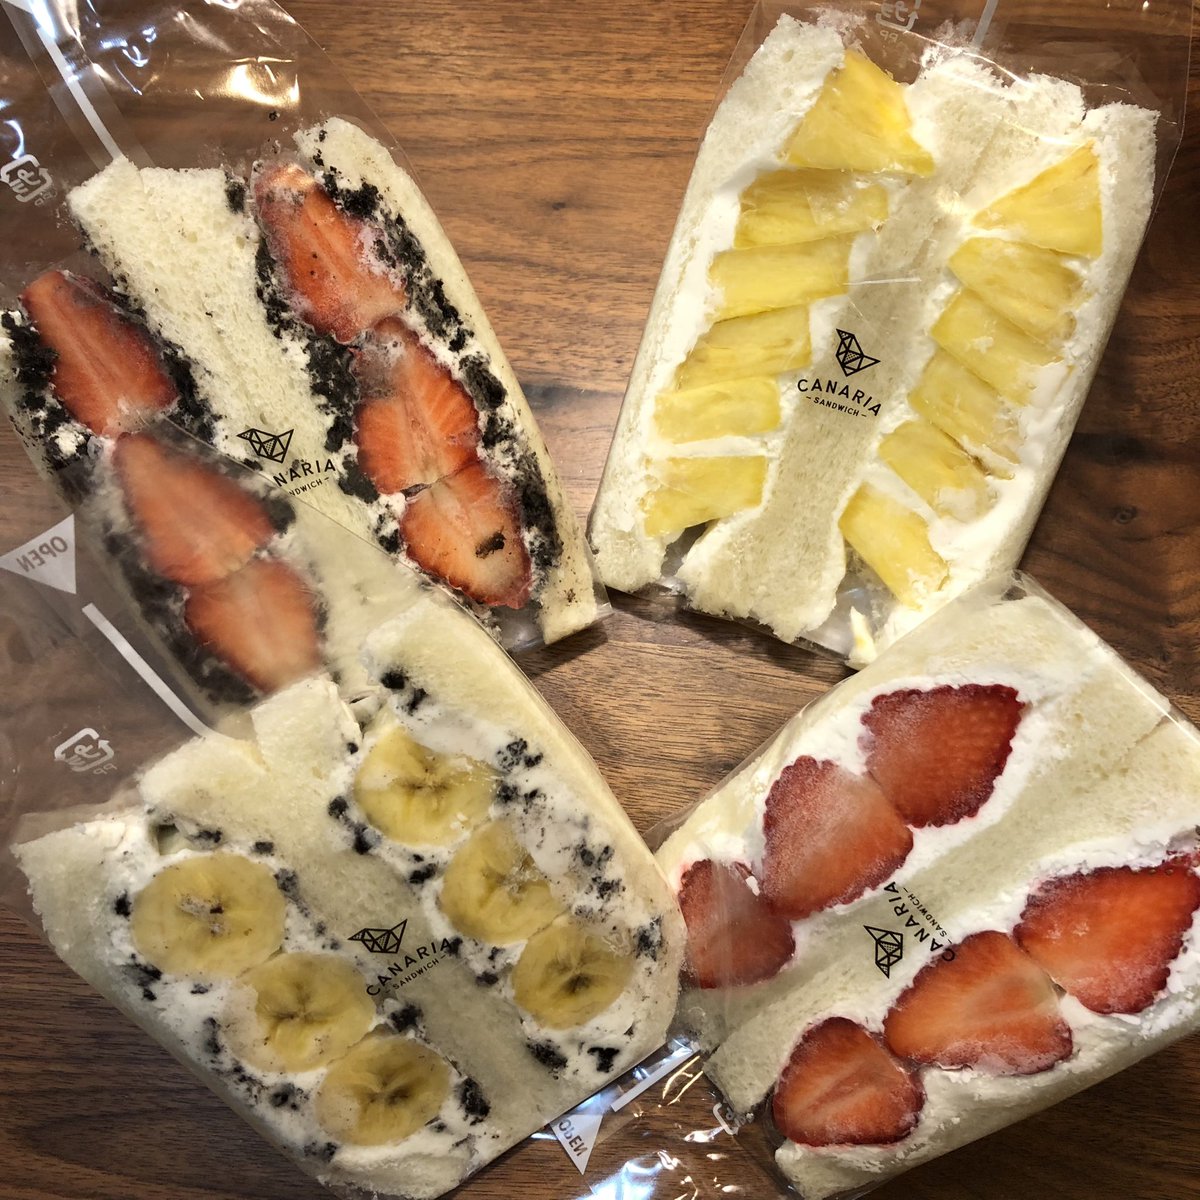 「絆ノ奇跡」日本ゴールドディスク大賞受賞おめでとうございます。👏😆✨
3月13日は、サンドイッチの日。
画像は、頂き物のフルーツサンド。甘過ぎないミルキーなふんわりクリームに、新鮮なゴロゴロのフルーツが爽やか。
ところで、フルーツサンドって、食事❓デザート❓🤔　#サンドイッチの日